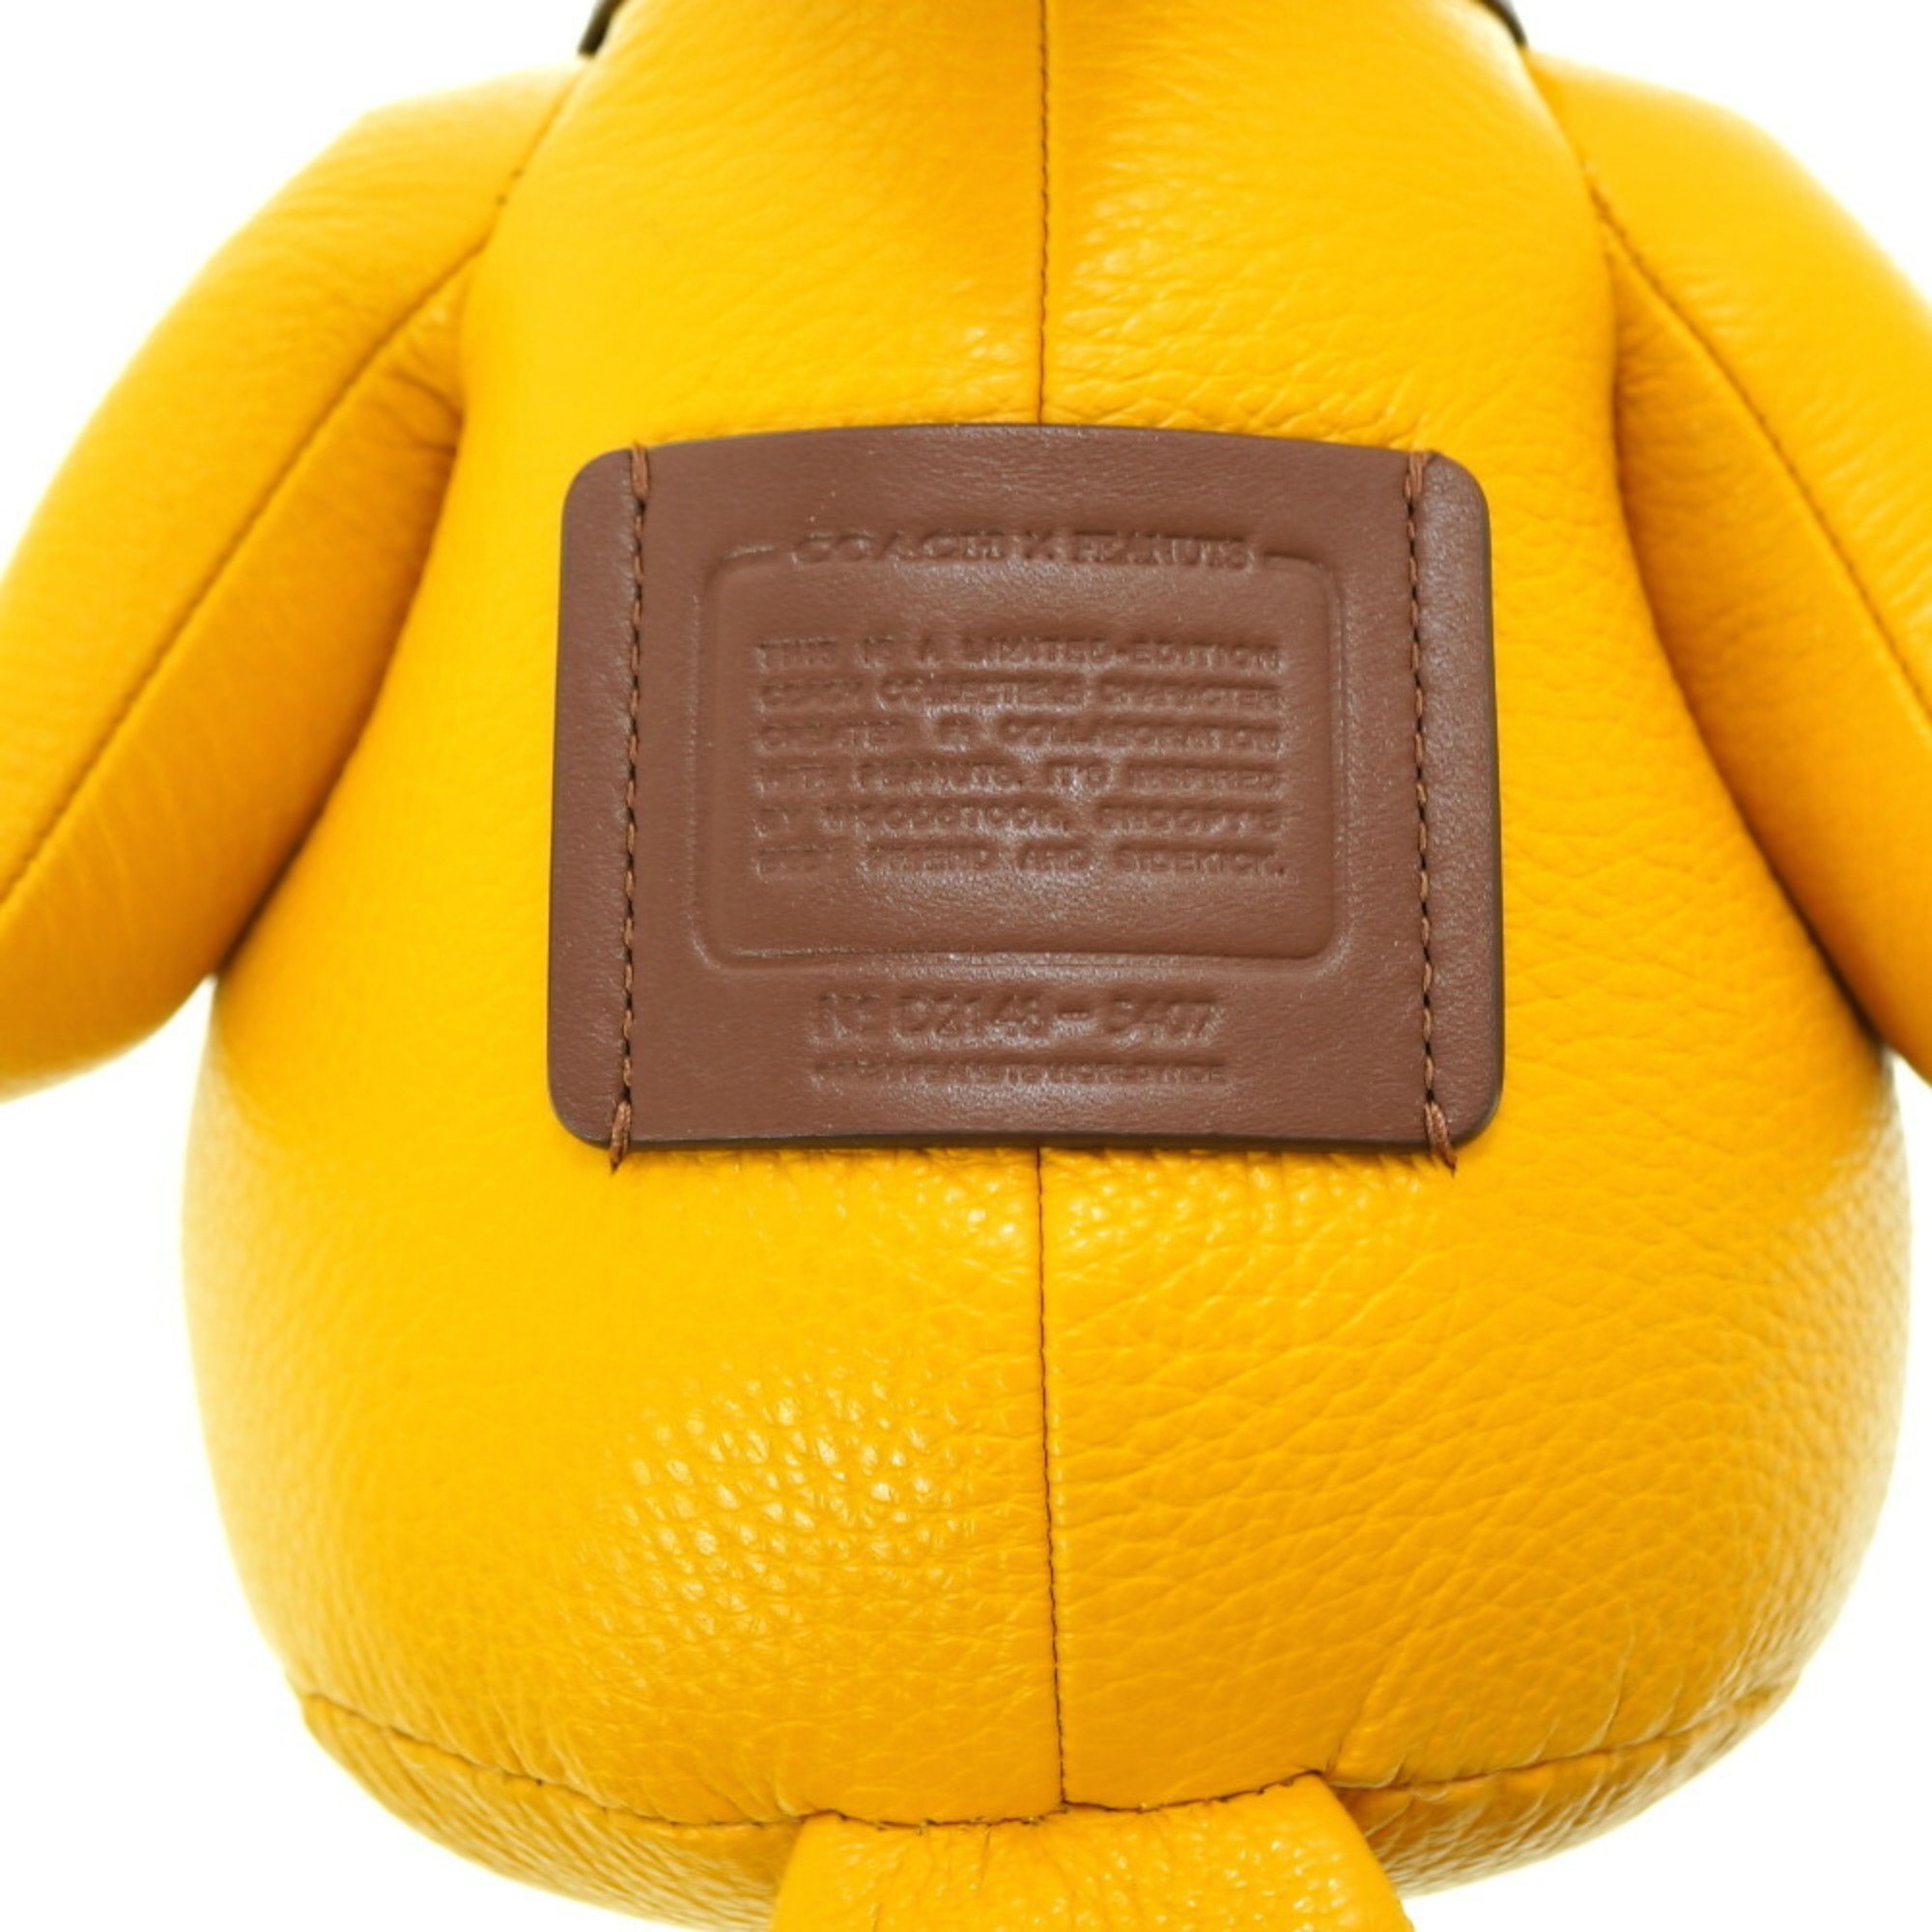 Coach PEANUTS Woodstock Doll Stuffed Leather Ocher 0039COACH Snoopy 6B0039ZE5